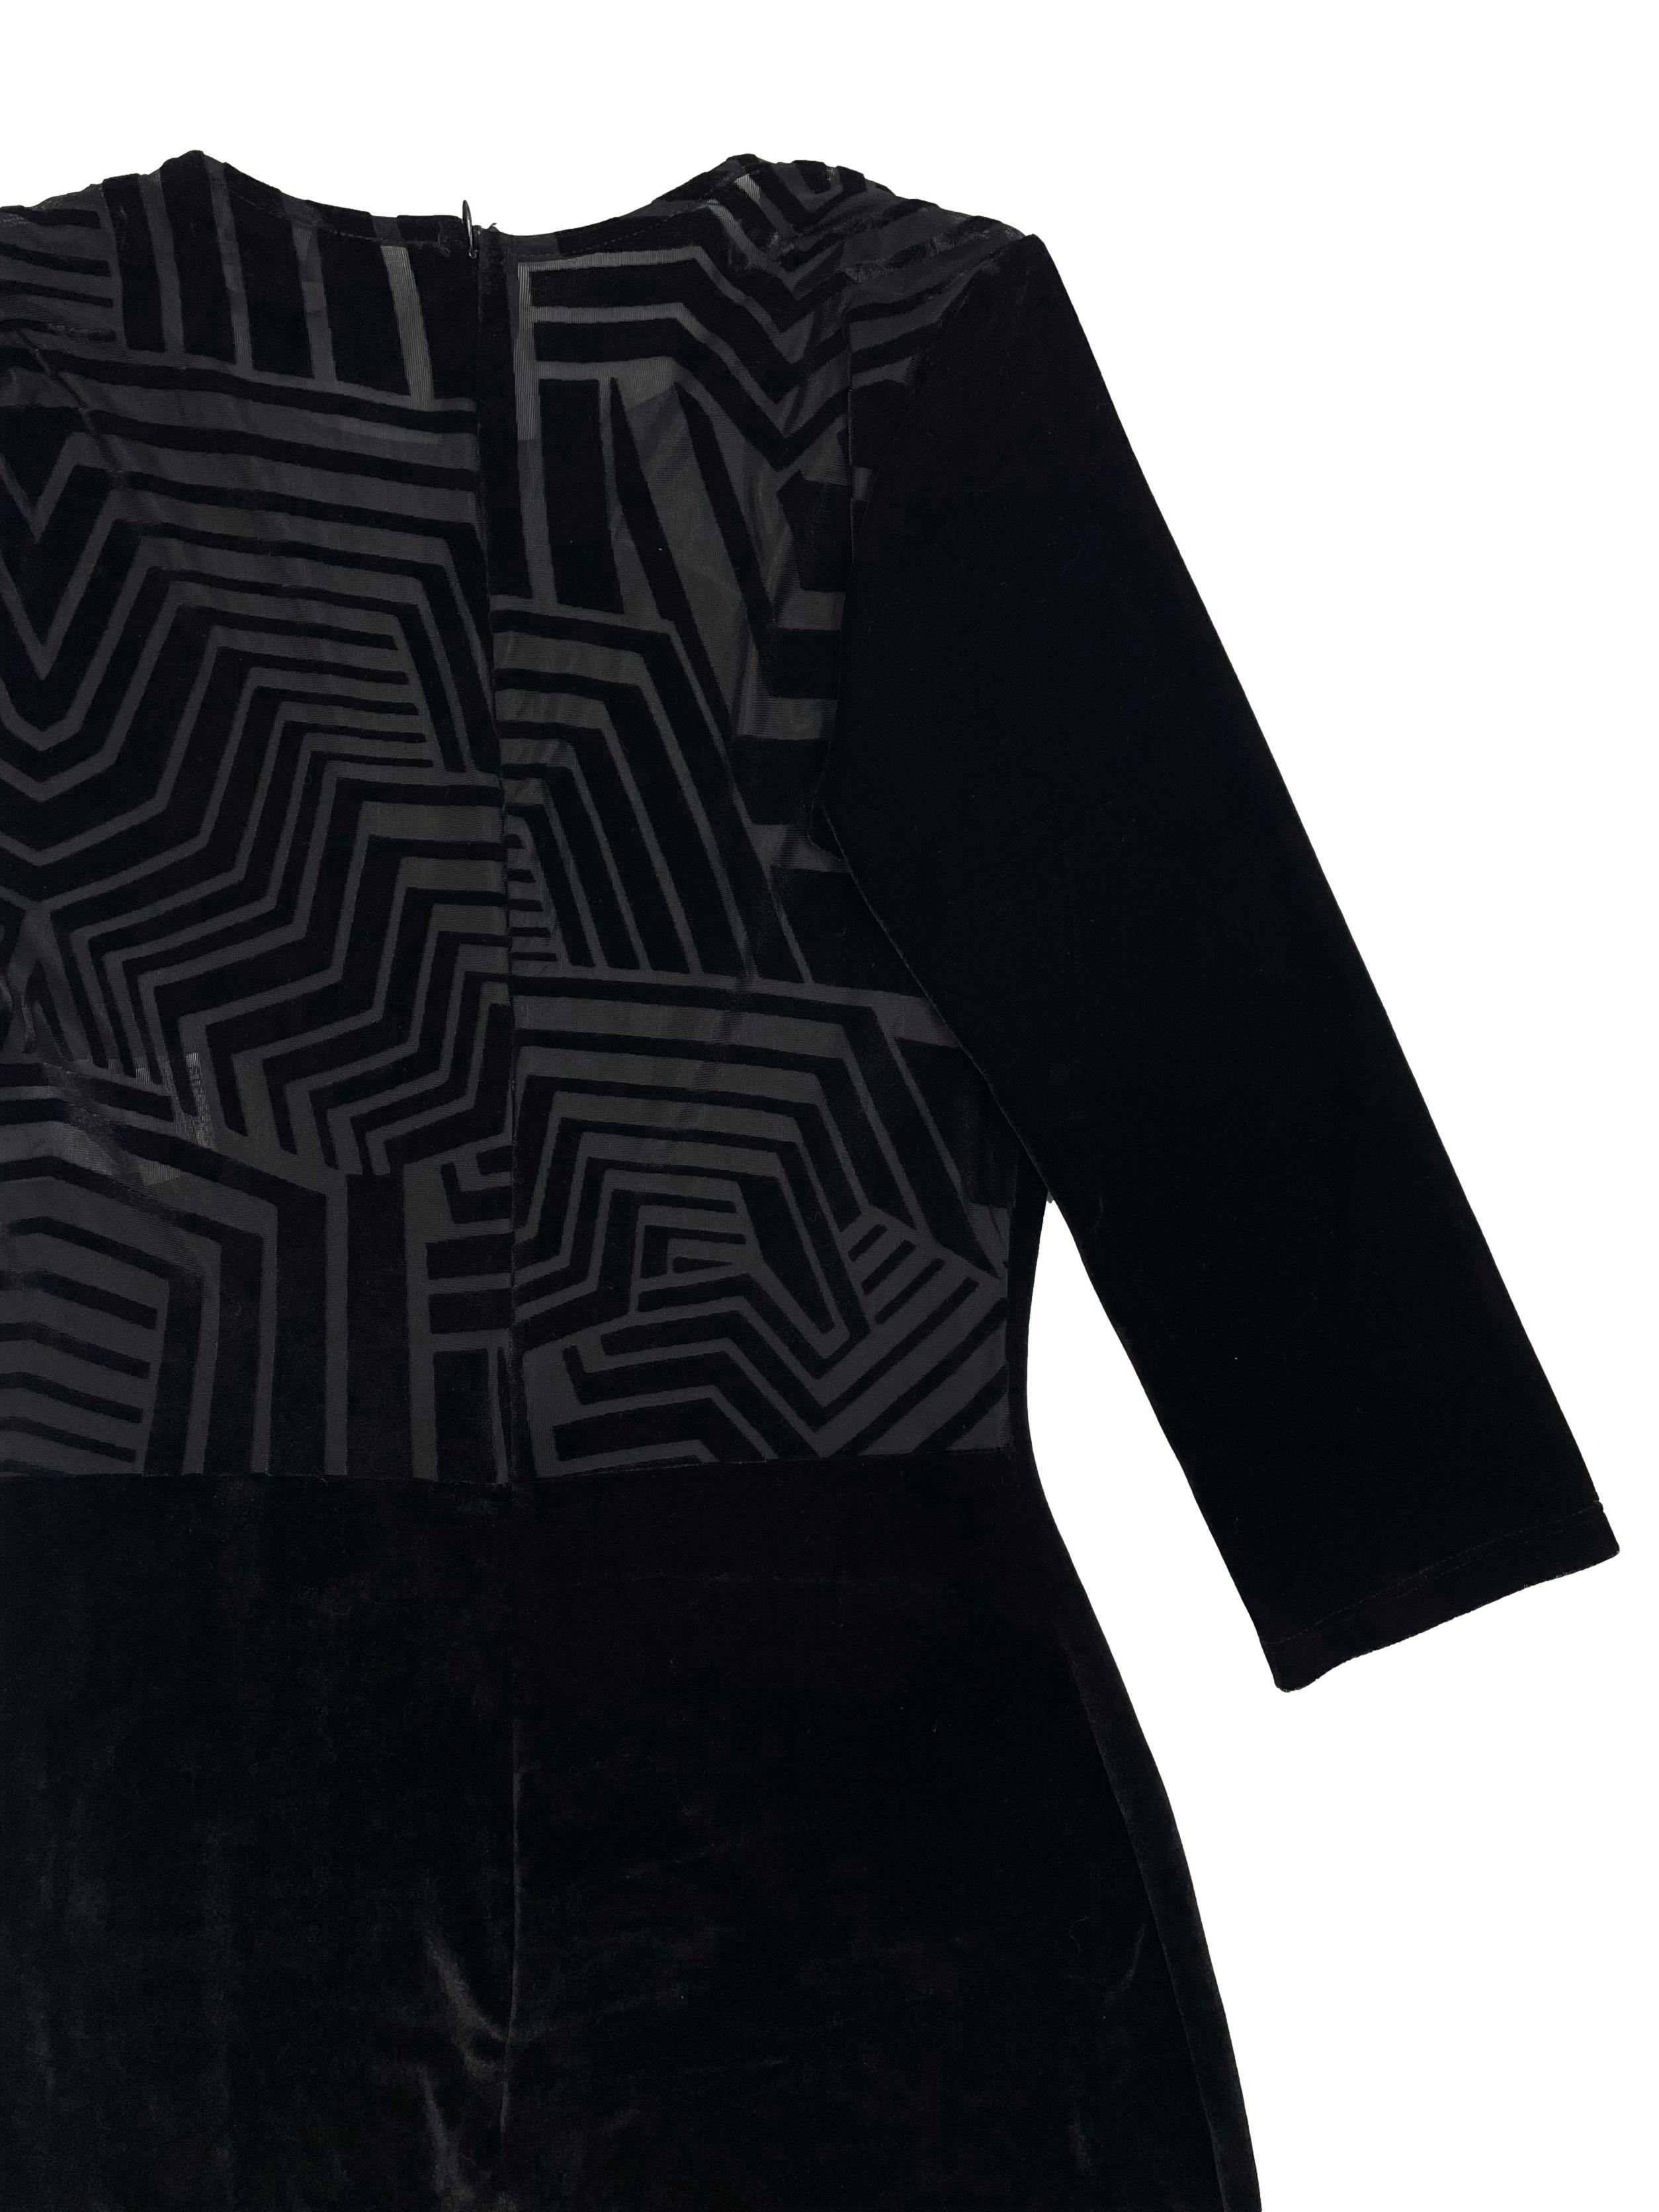 Vestido Studio F negro de terciopelo, espalda de mesh con patron geométrico, mangas 3/4, cierre invisible posterior. Busto 78cm, Largo 94cm.